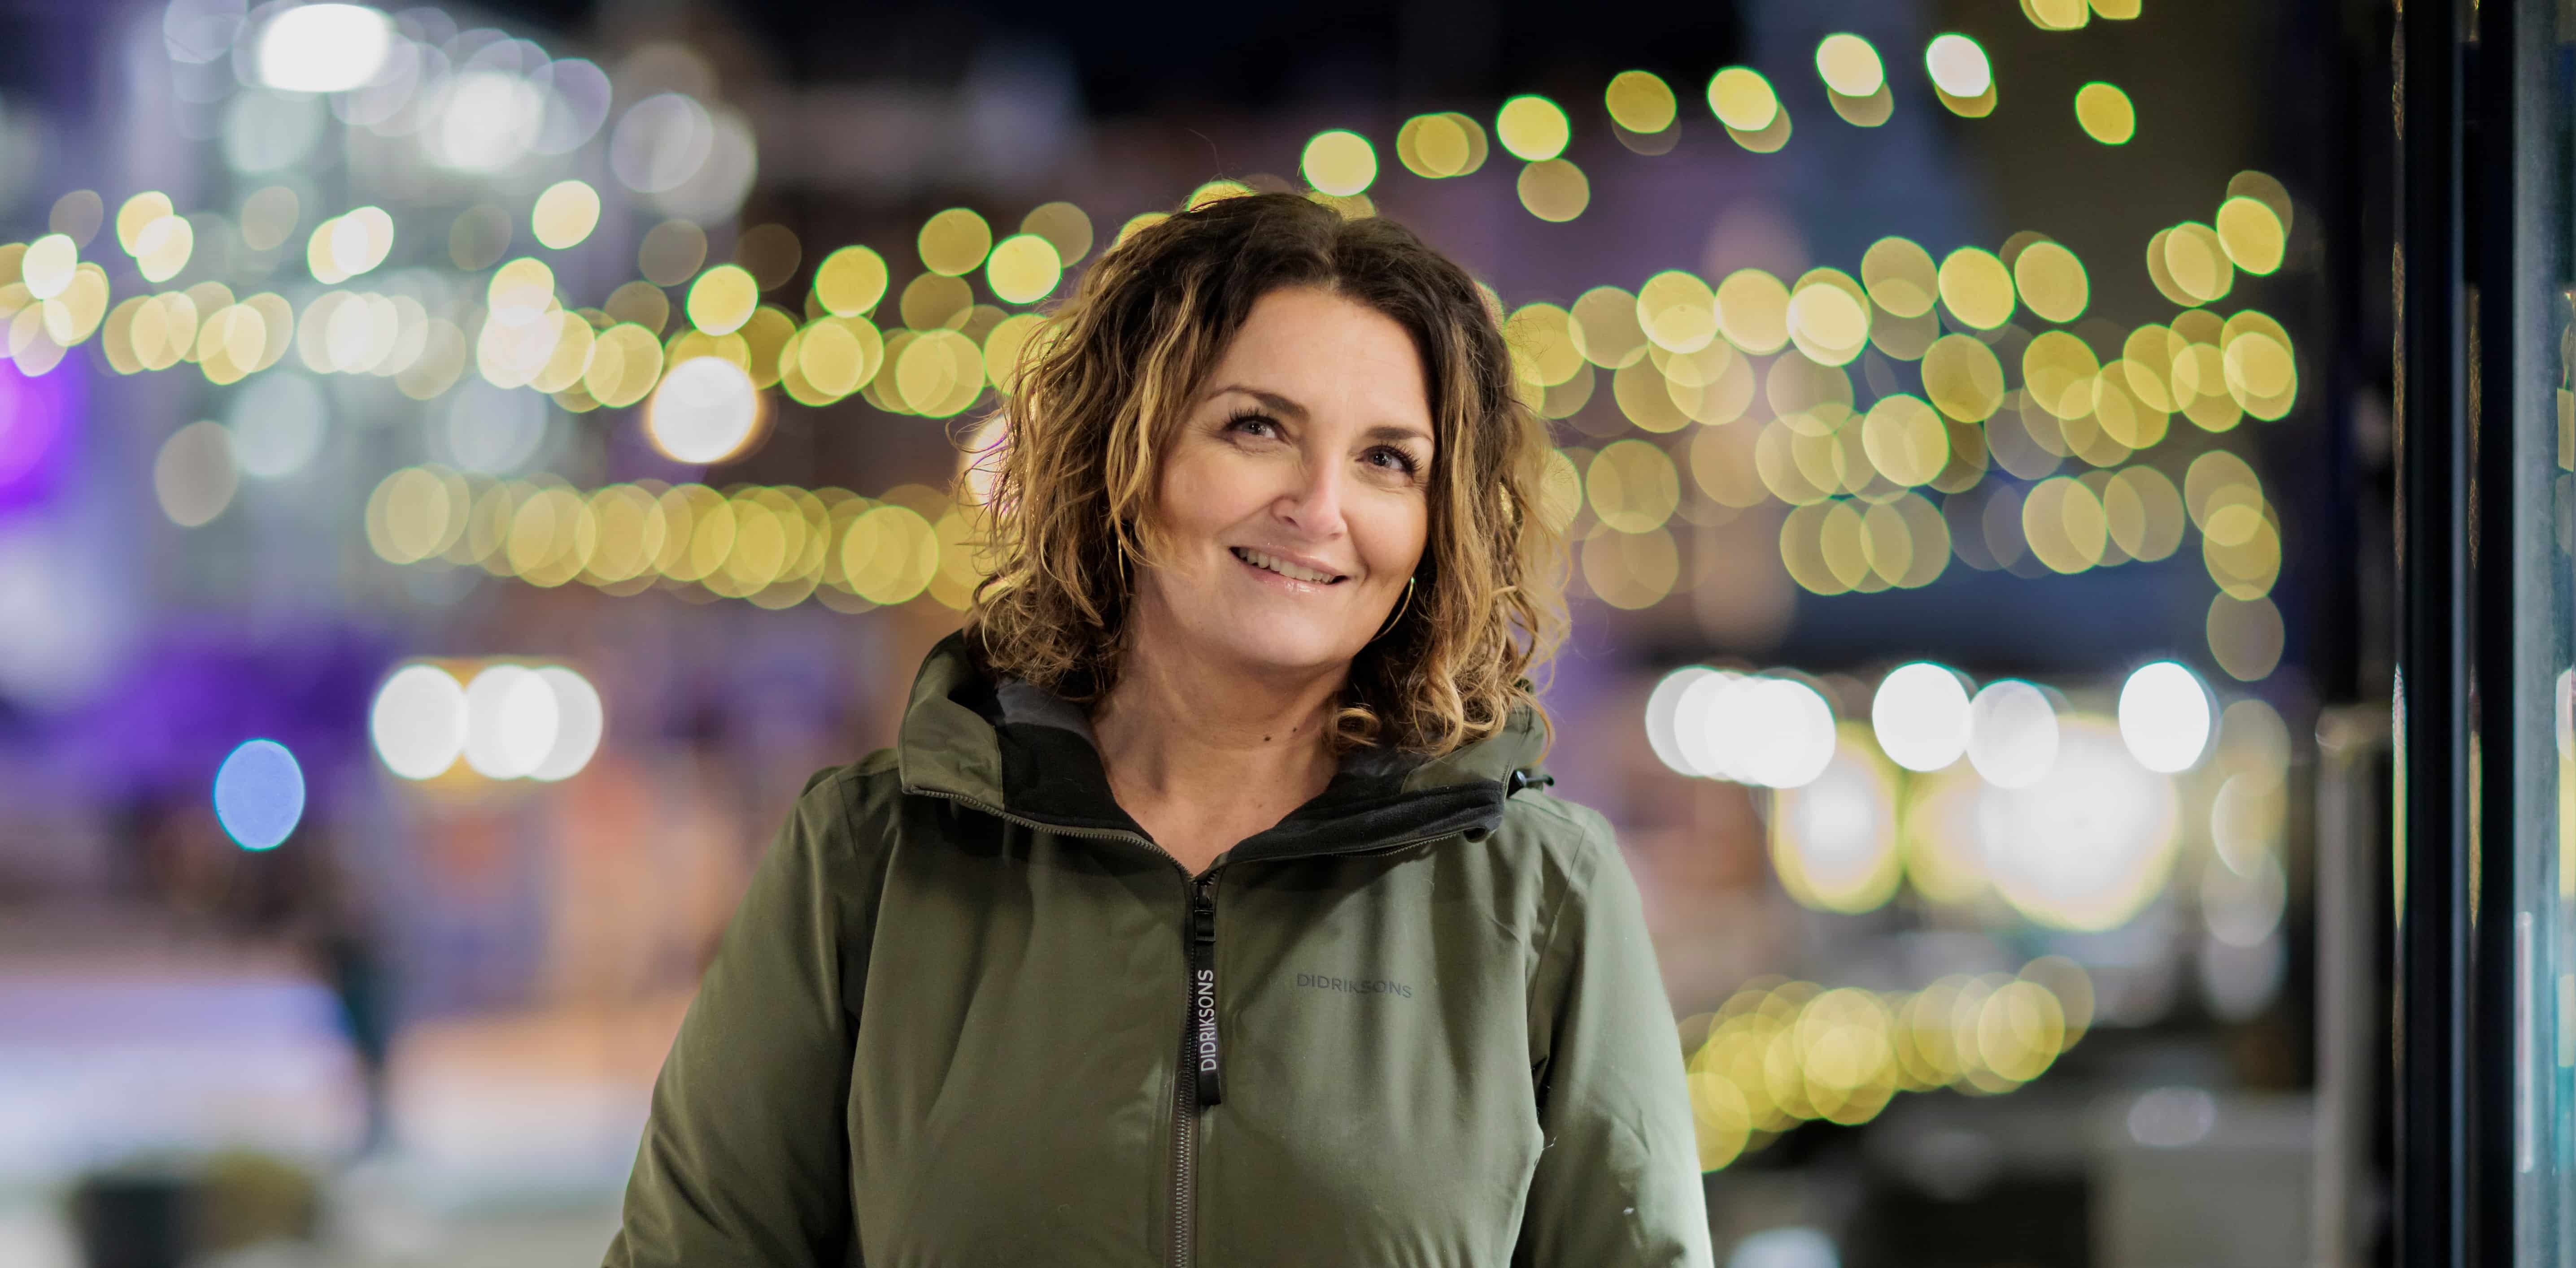 Christel står oppstilt ute i gatene med julelys i bakgrunn, og ser inn i kamera med et lite smil.